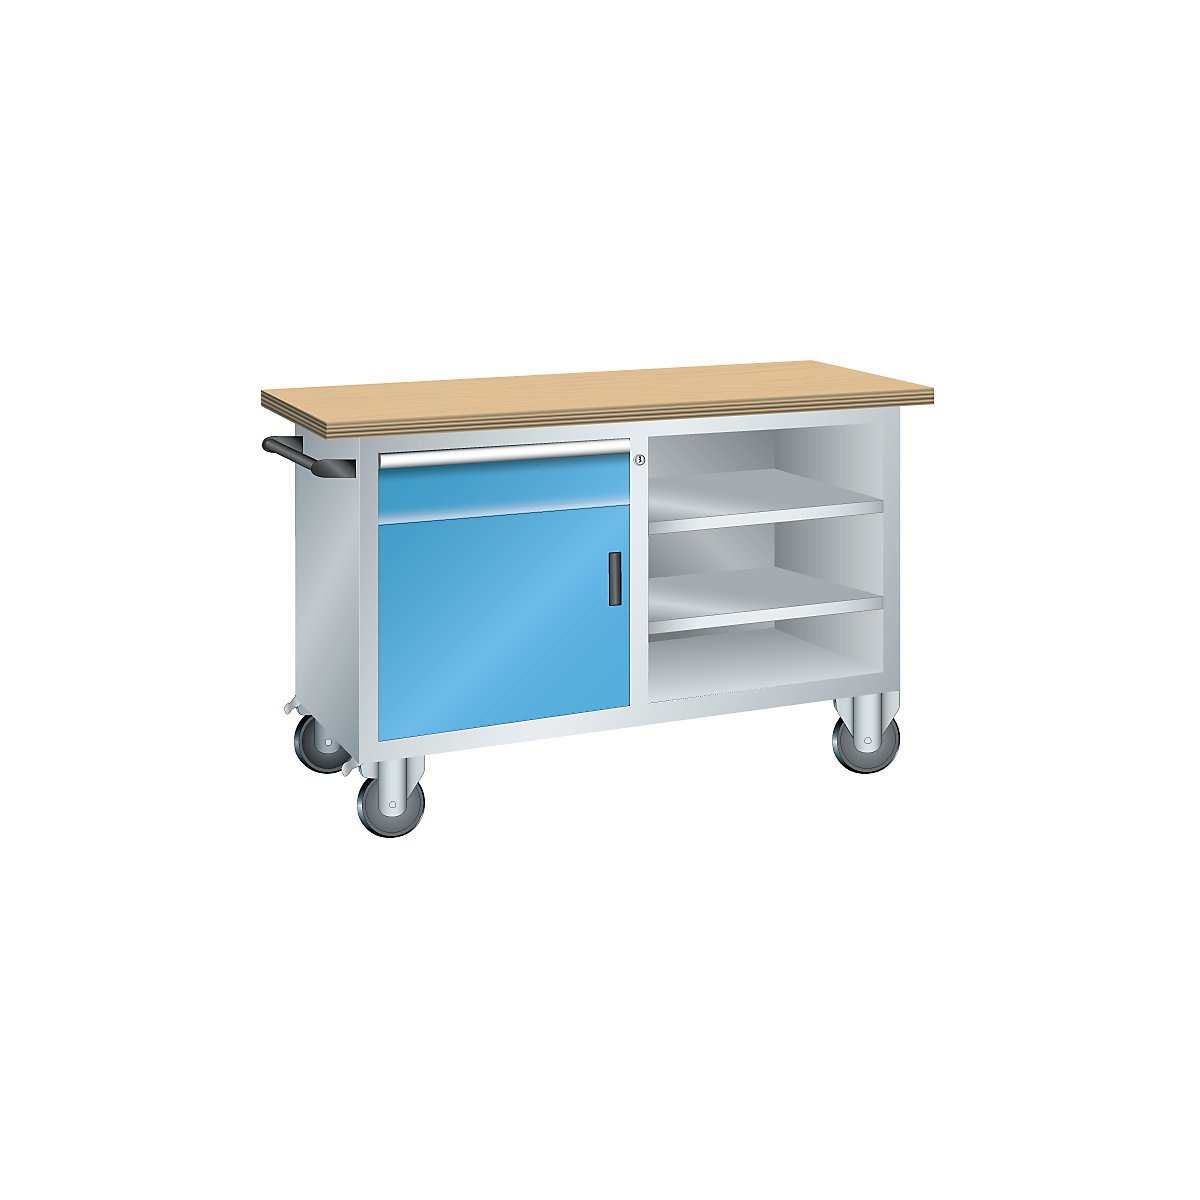 Kompaktowy stół warsztatowy, mobilny – LISTA, 1 szuflada, 1 drzwi, 3 półki, korpus jasnoszary, front jasnoniebieski-3